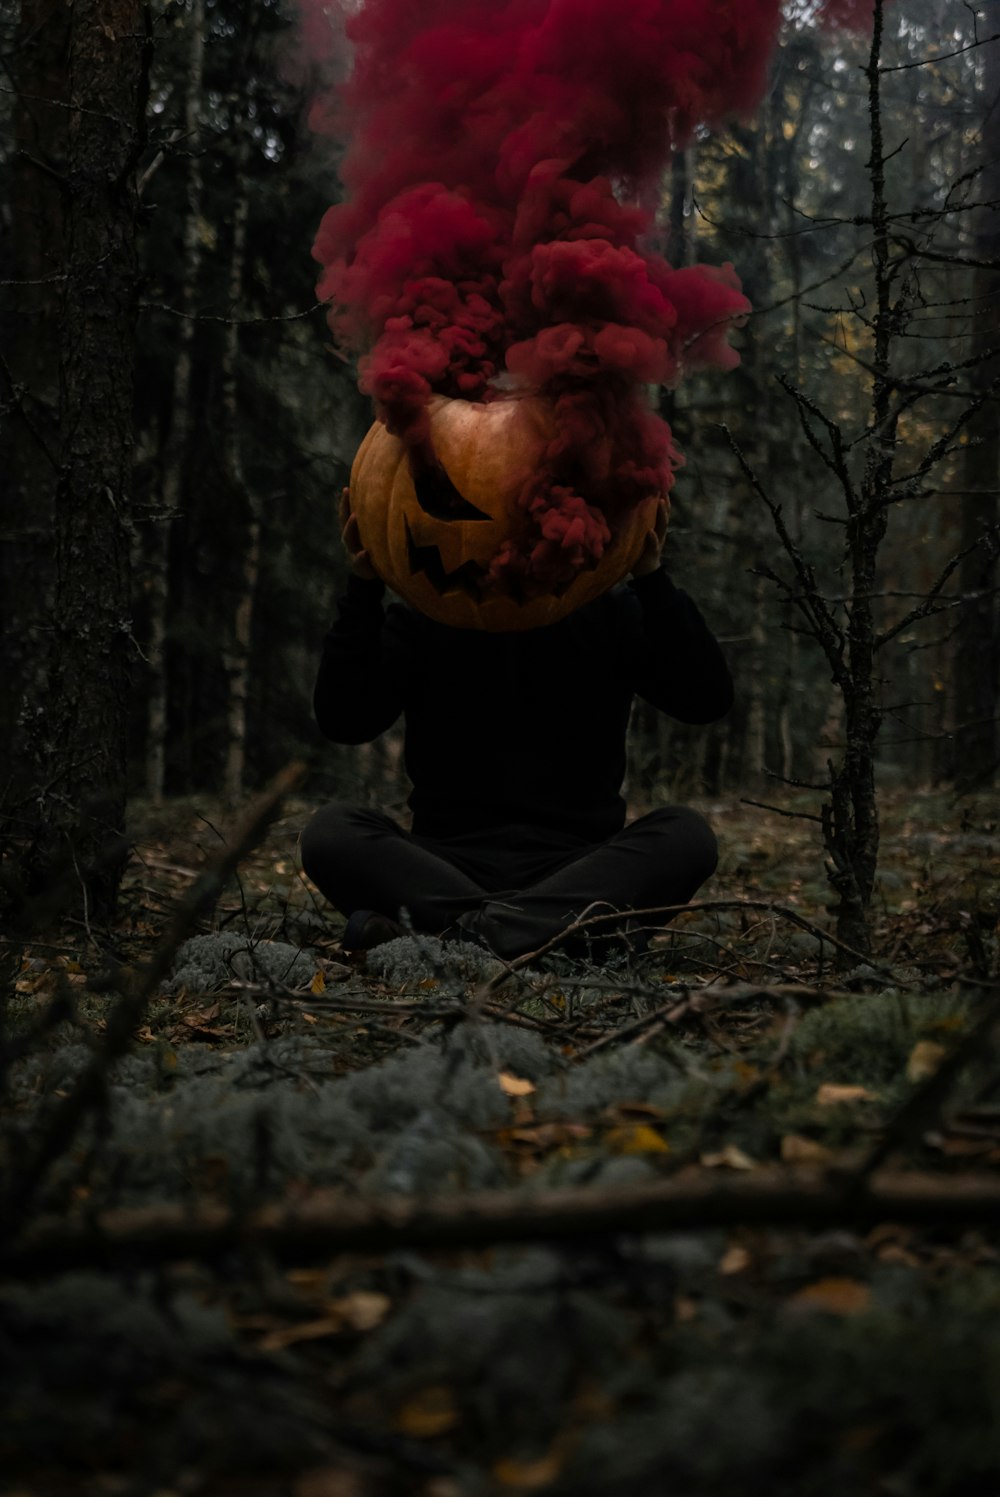 Eine Person, die mit einem roten Schornstein auf dem Kopf in einem Wald sitzt